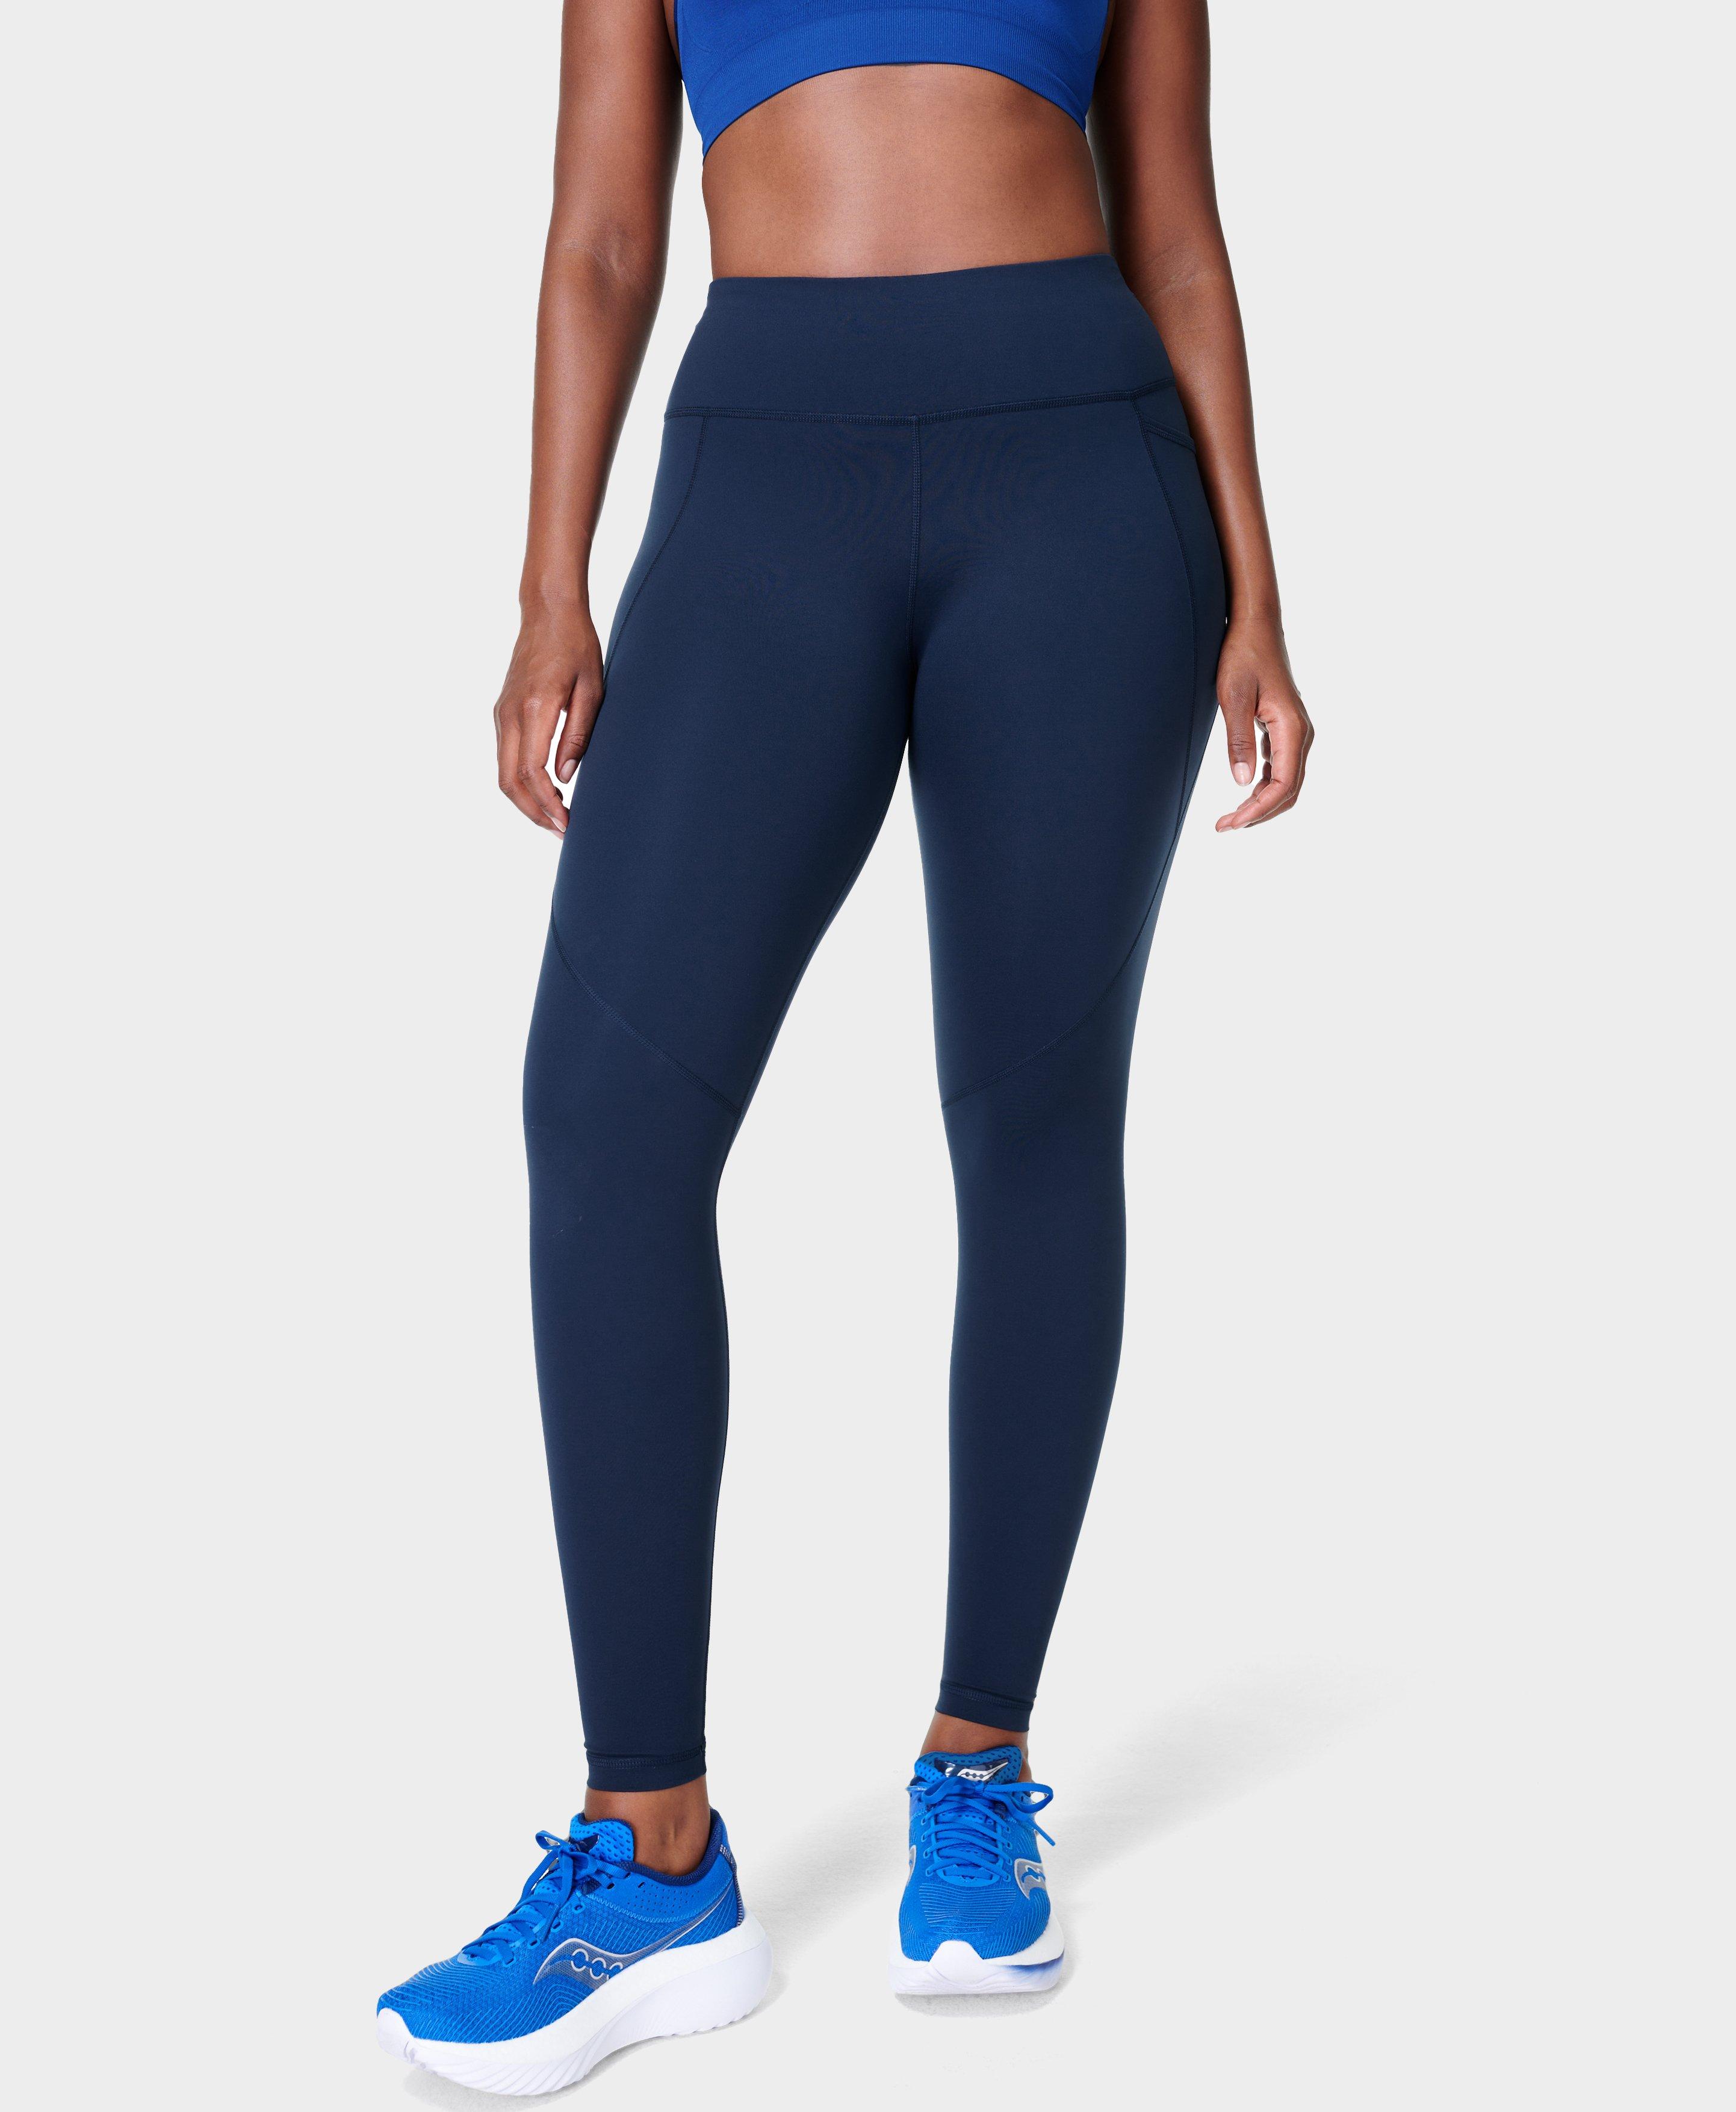 Power Workout Leggings - Navy Blue, Women's Leggings